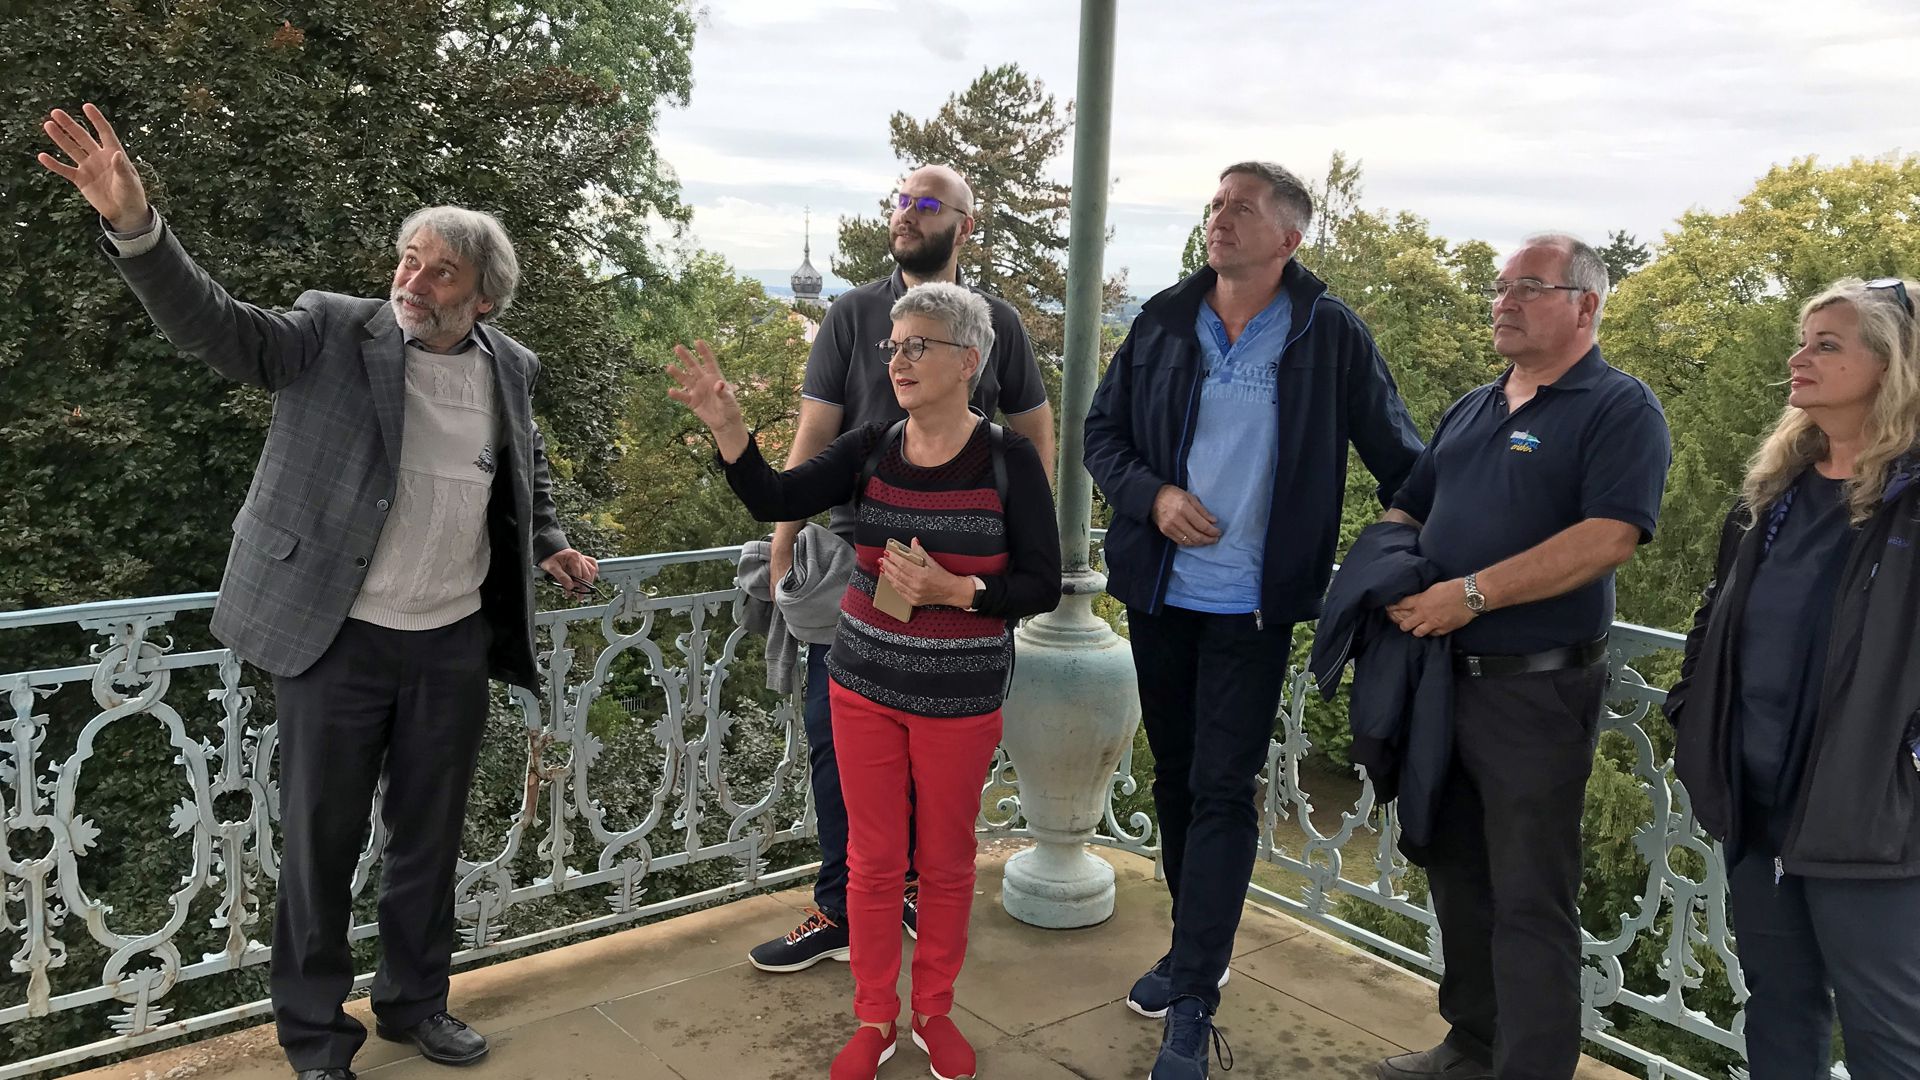 Historische Tour: Kulturabteilungsleiter Thomas Adam (links) mit angehenden Stadführern auf dem Belvedere.